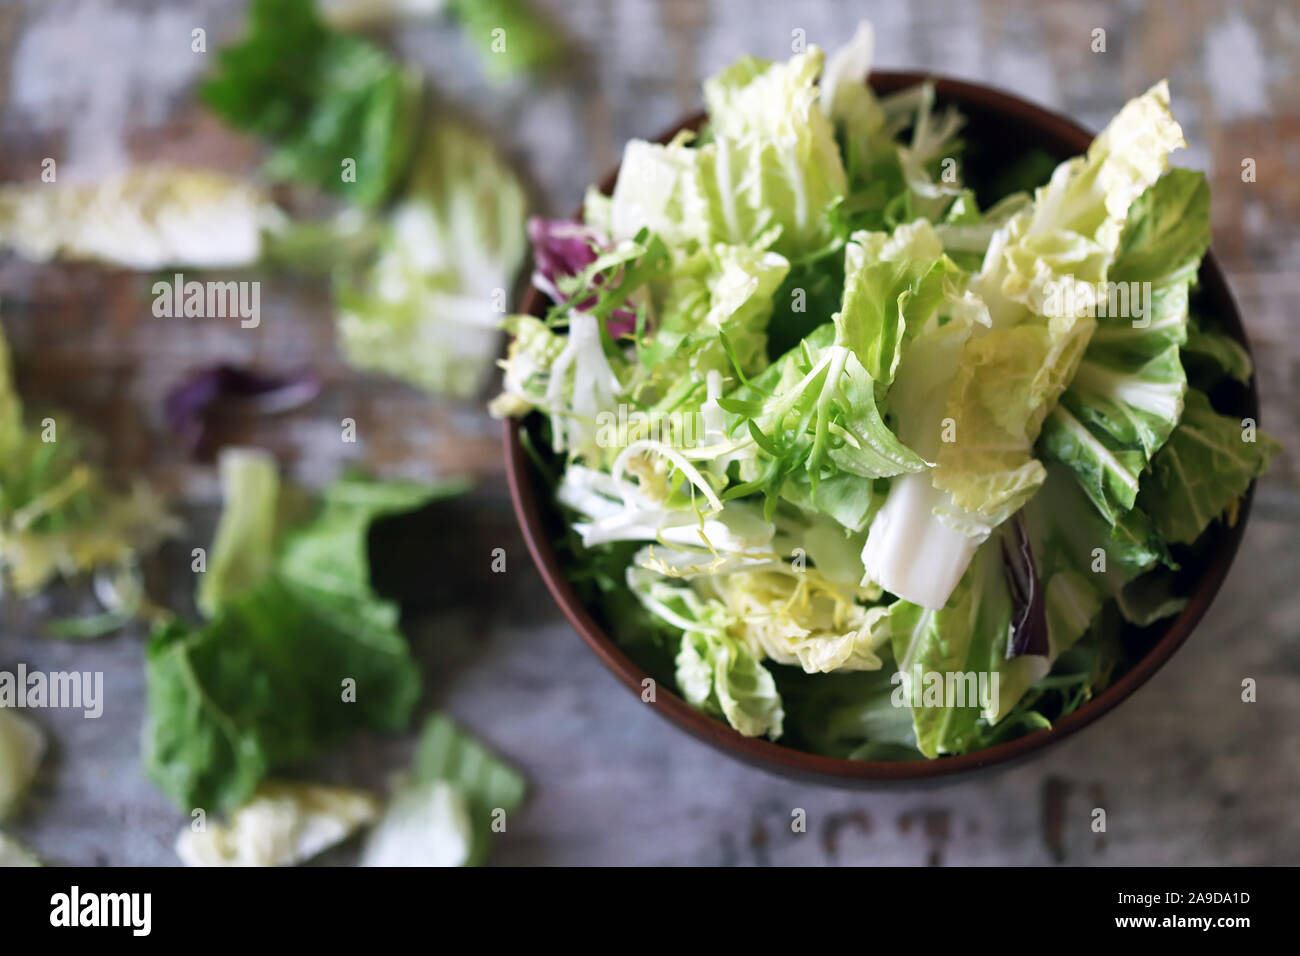 Mischung von Salaten in eine Schüssel geben. Grüne saftige Salatblätter. Das Konzept der gesunden Ernährung. Selektive konzentrieren. Makro. Stockfoto